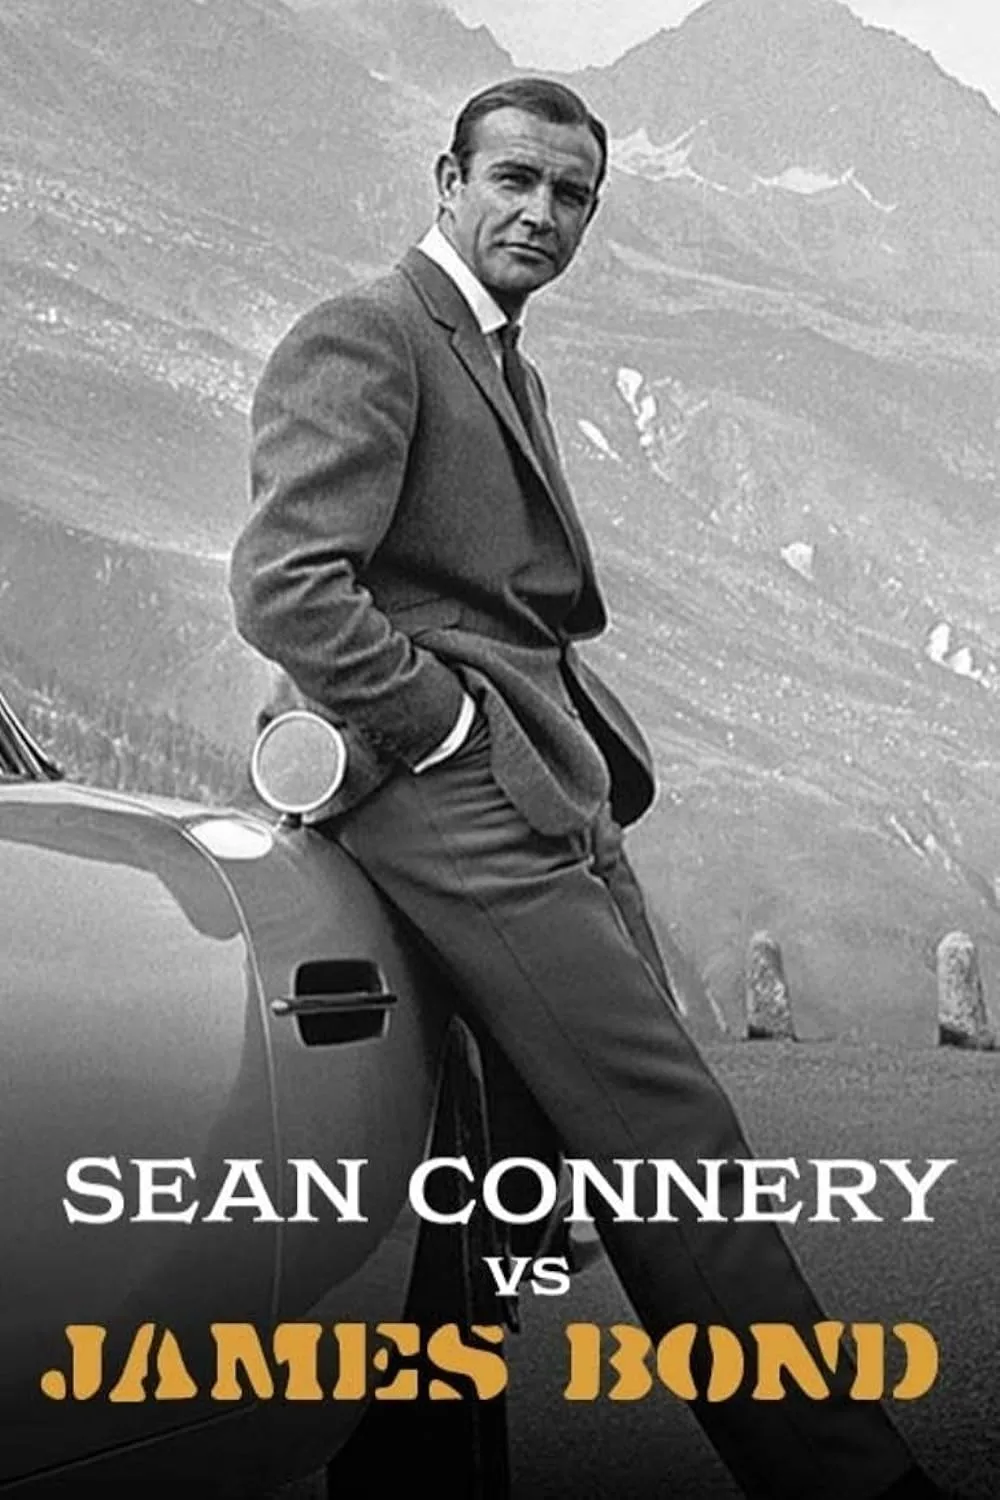     Sean Connery kontra James Bond